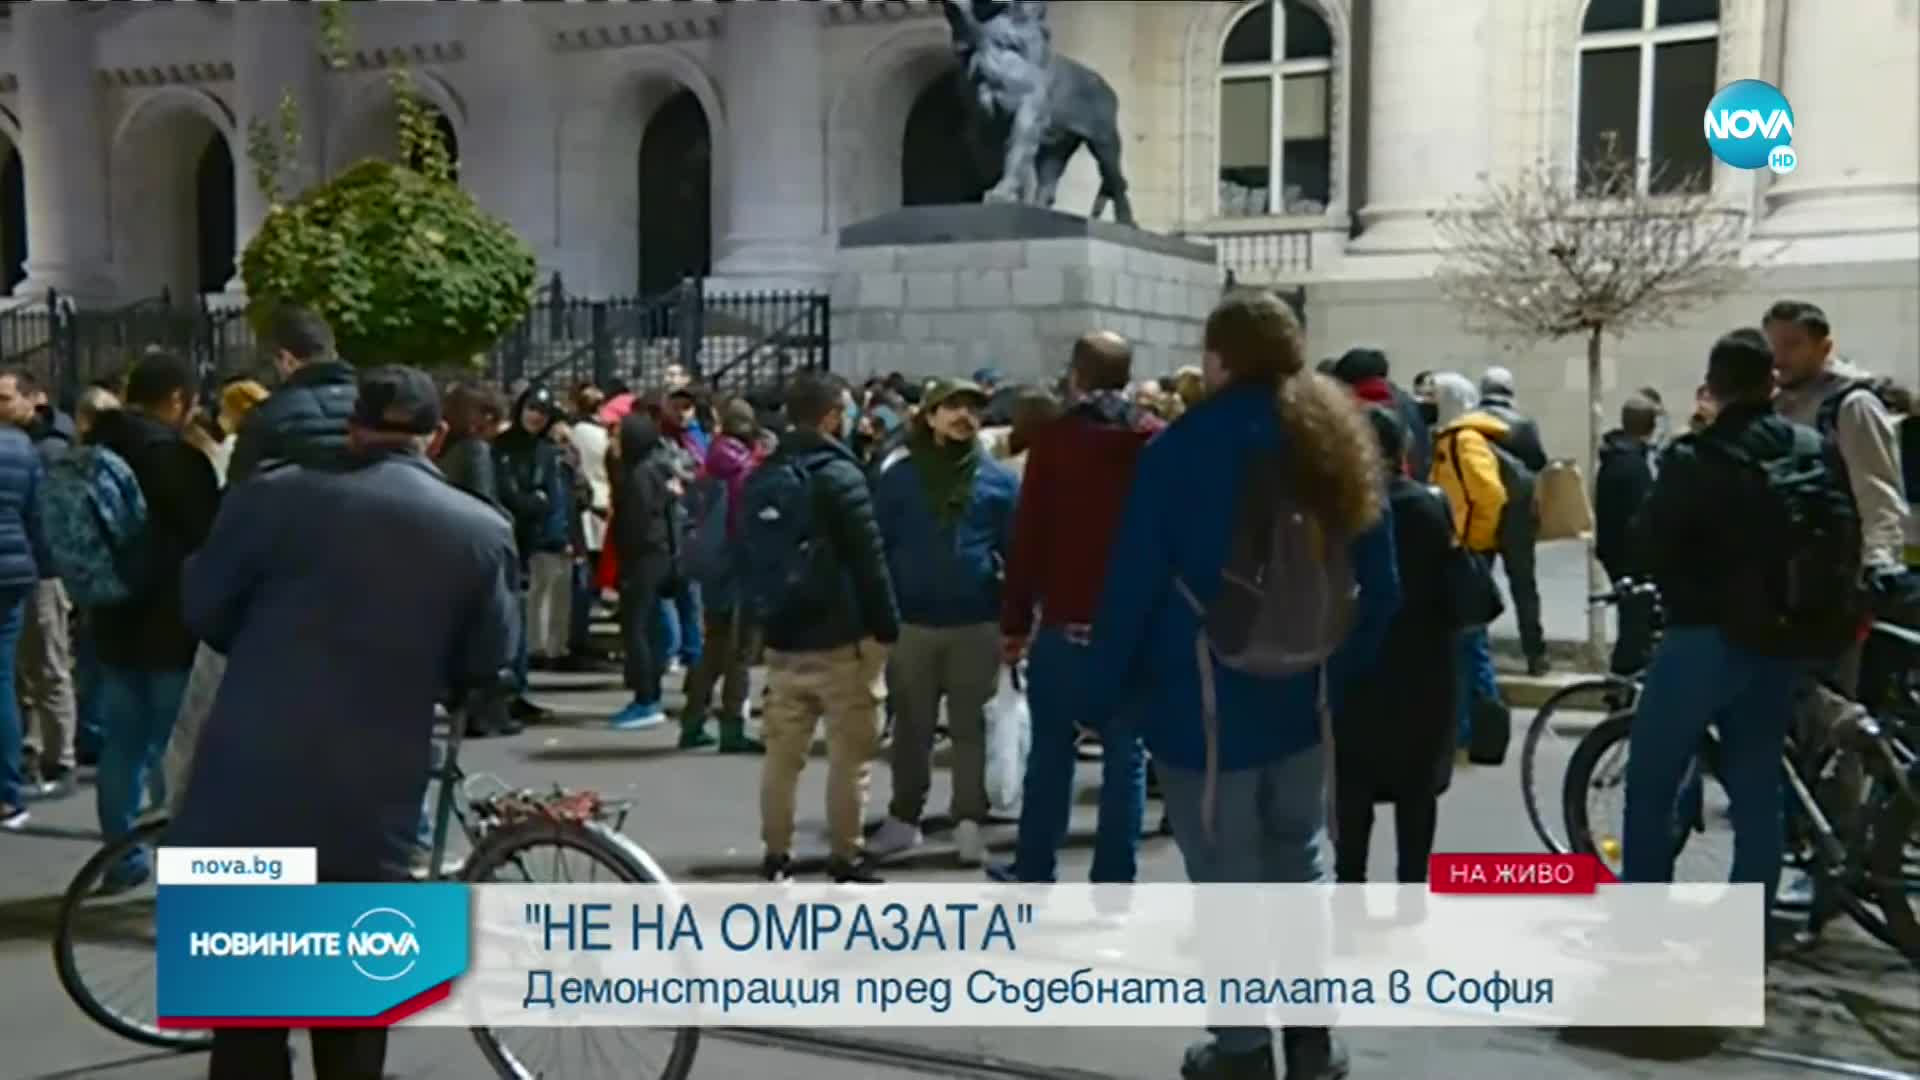 Протест "НЕ на омразата" в центъра на Софив